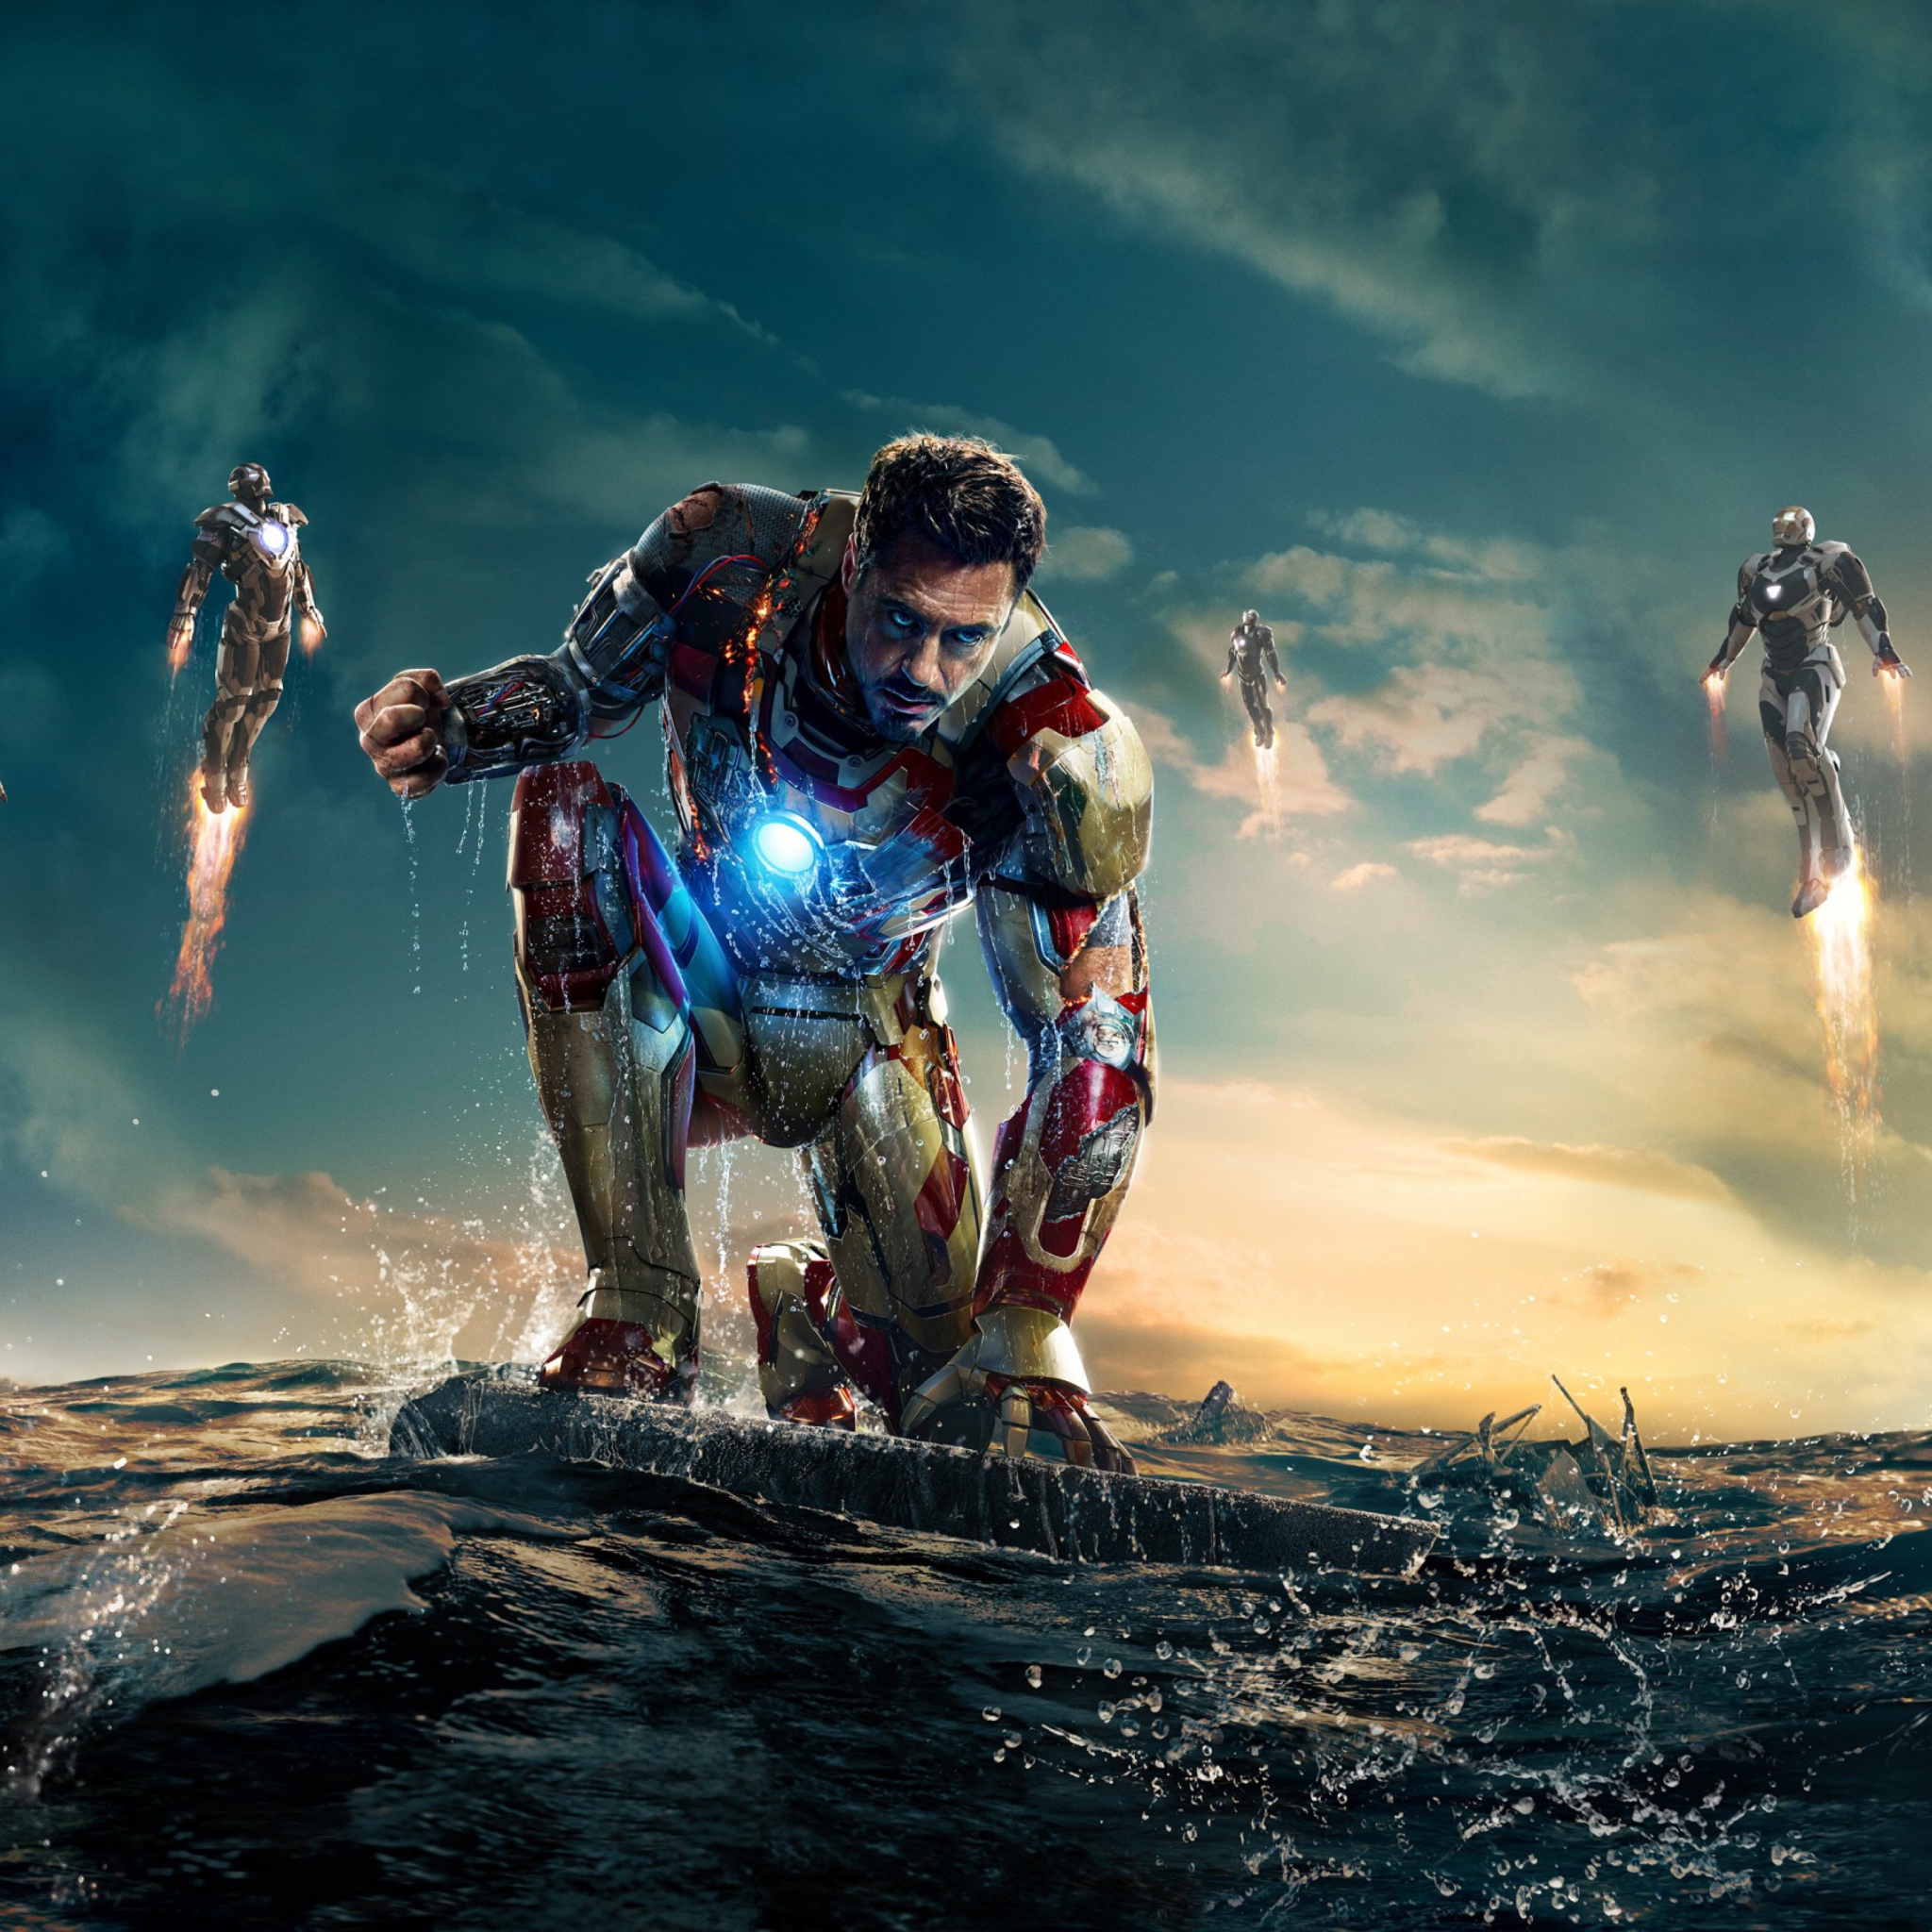 Sfondi Robert Downey Jr. As Iron Man 2048x2048